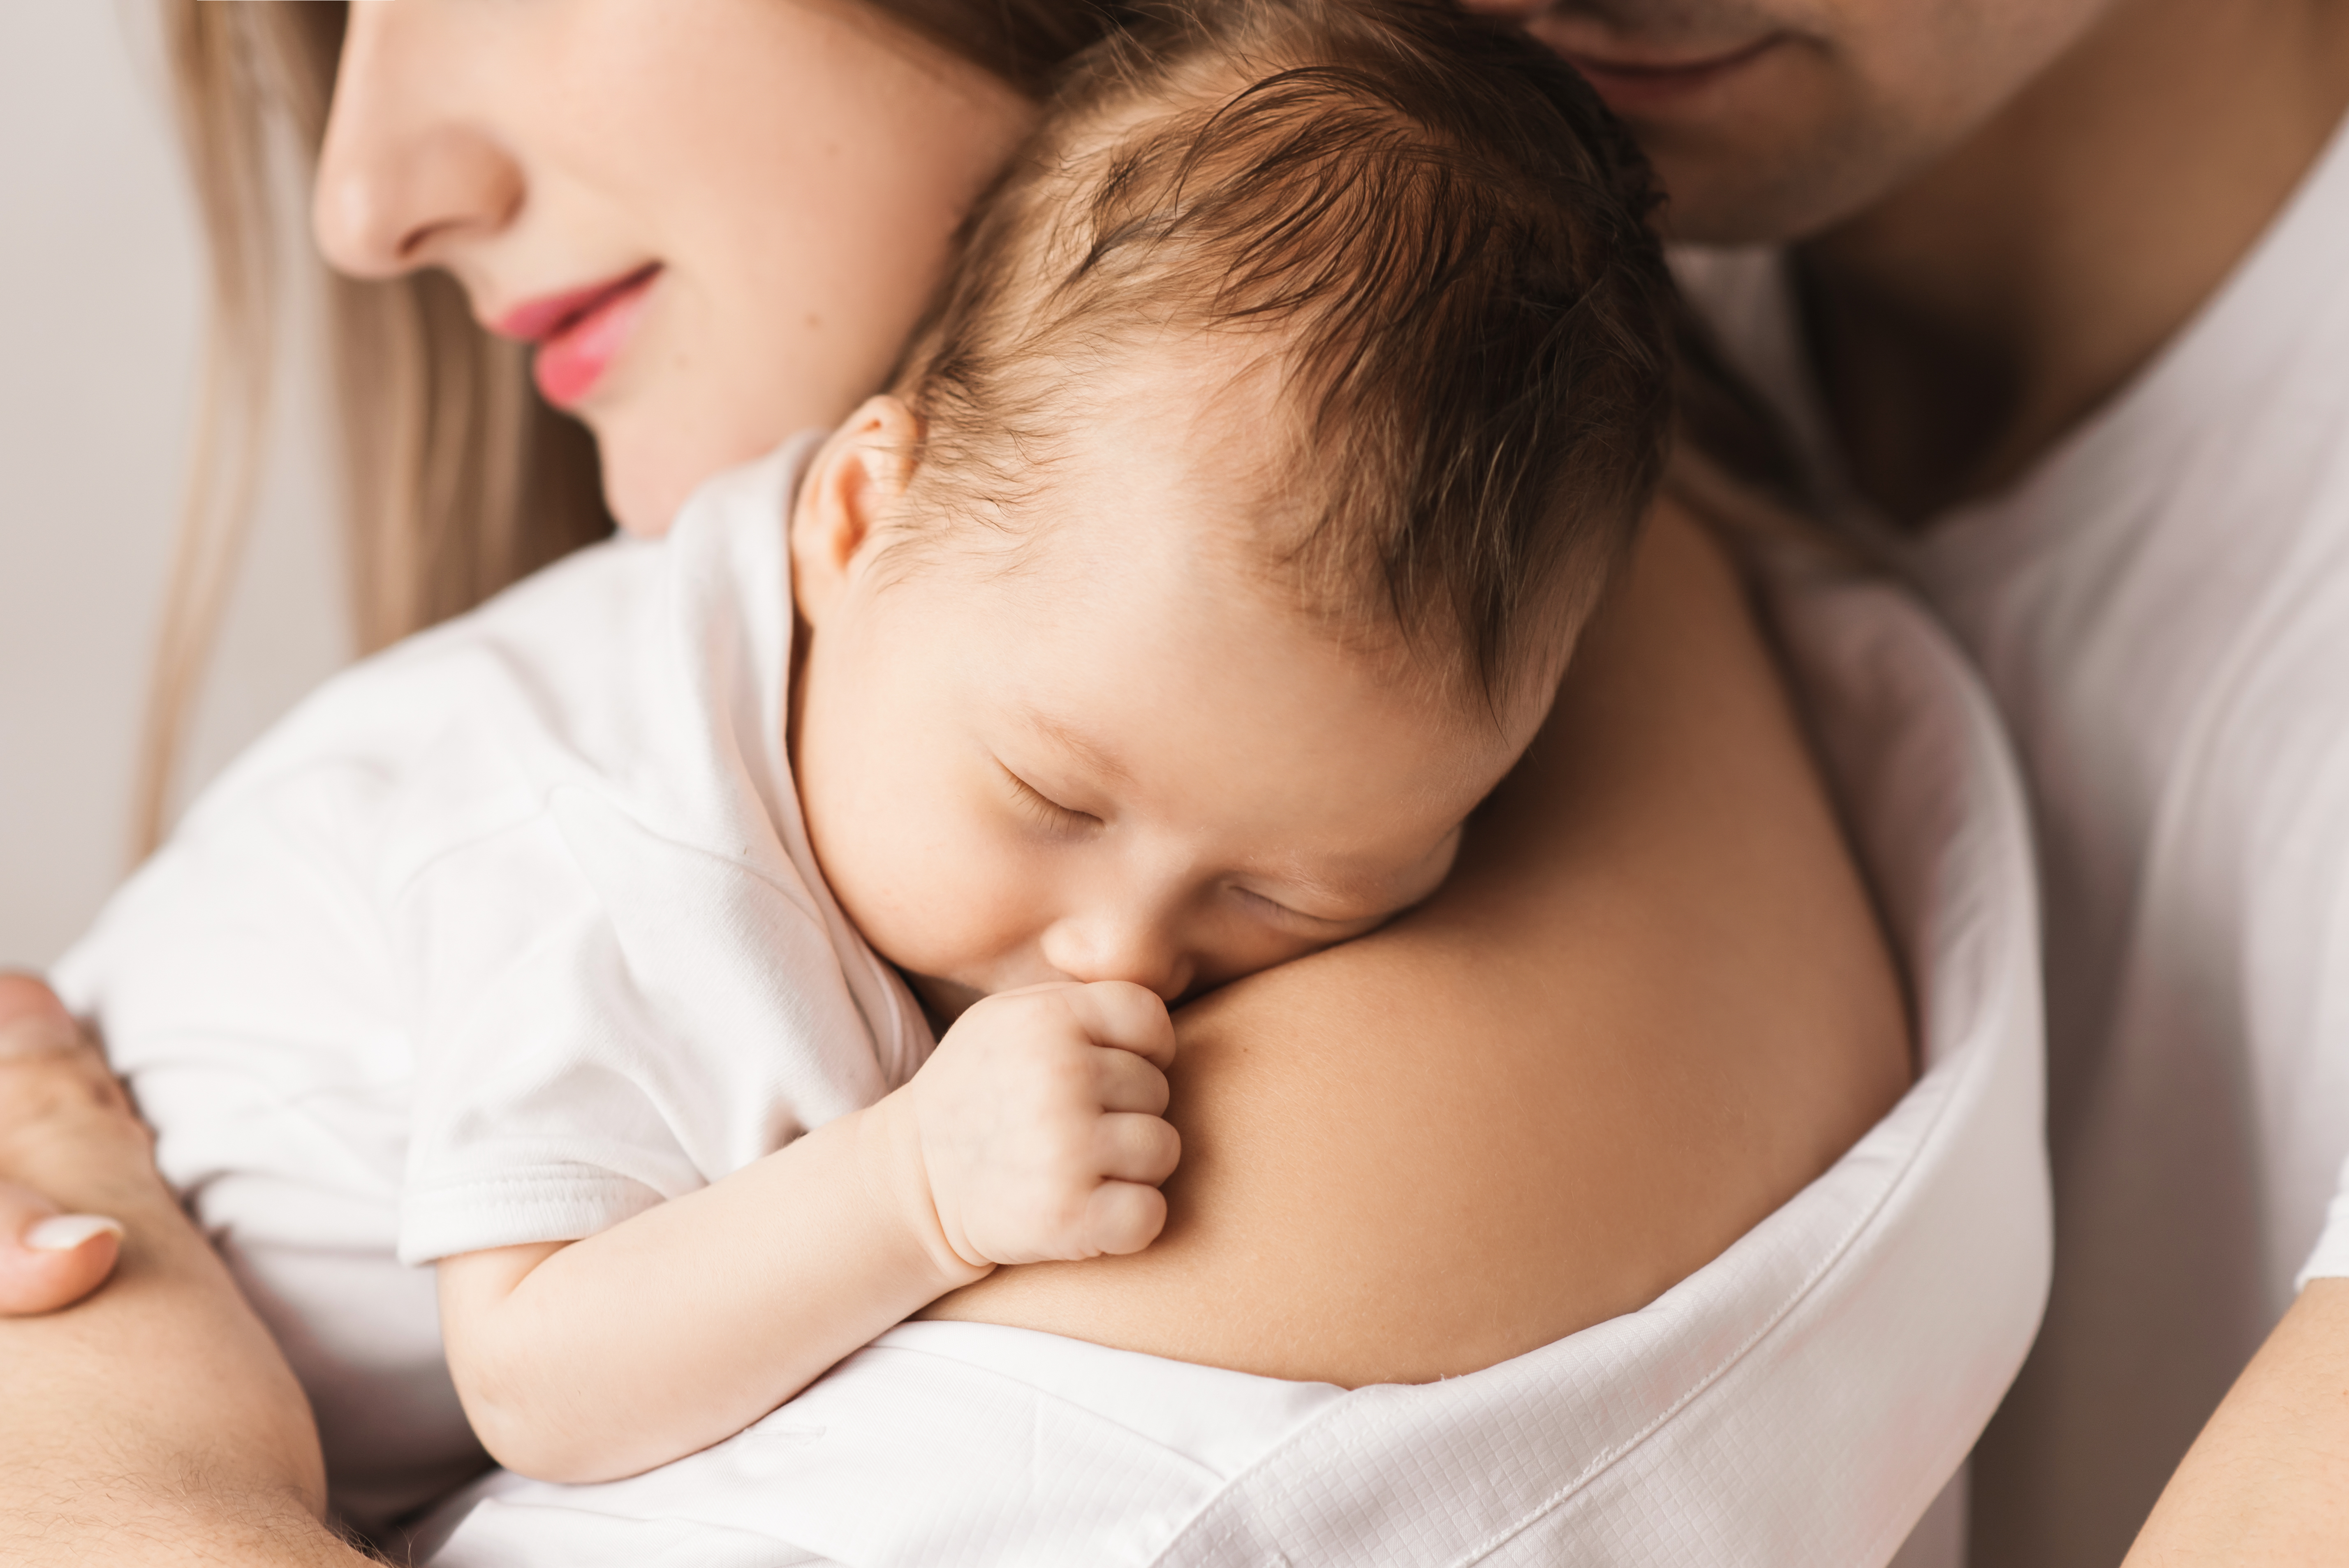 Une mère tenant son nouveau-né avec son mari derrière elle | Source : Shutterstock